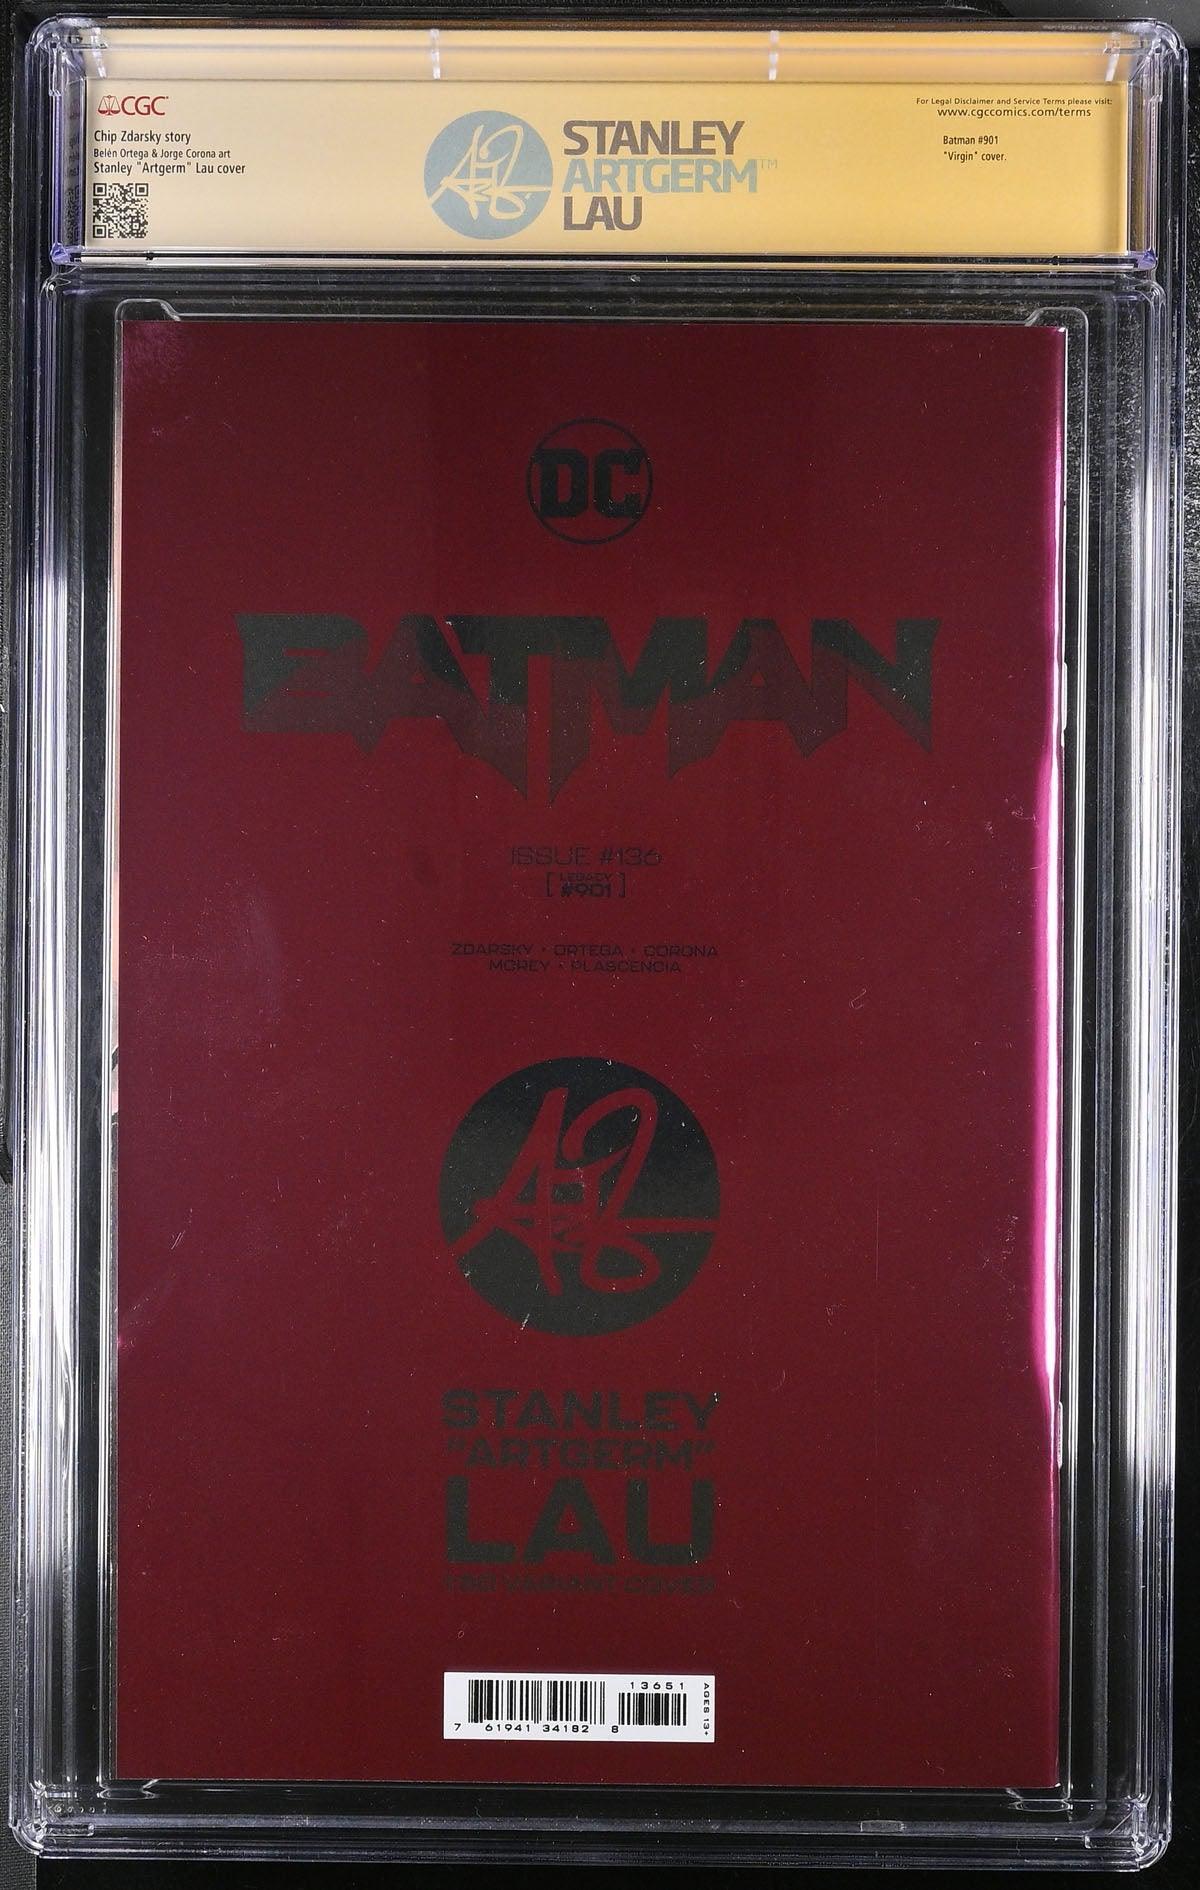 CGC BATMAN VOL 3 #136 1:50 LAU FOIL EDITION (9.8) SIGNATURE SERIES - SIGNED BY STANLEY "ARTGERM" - Kings Comics